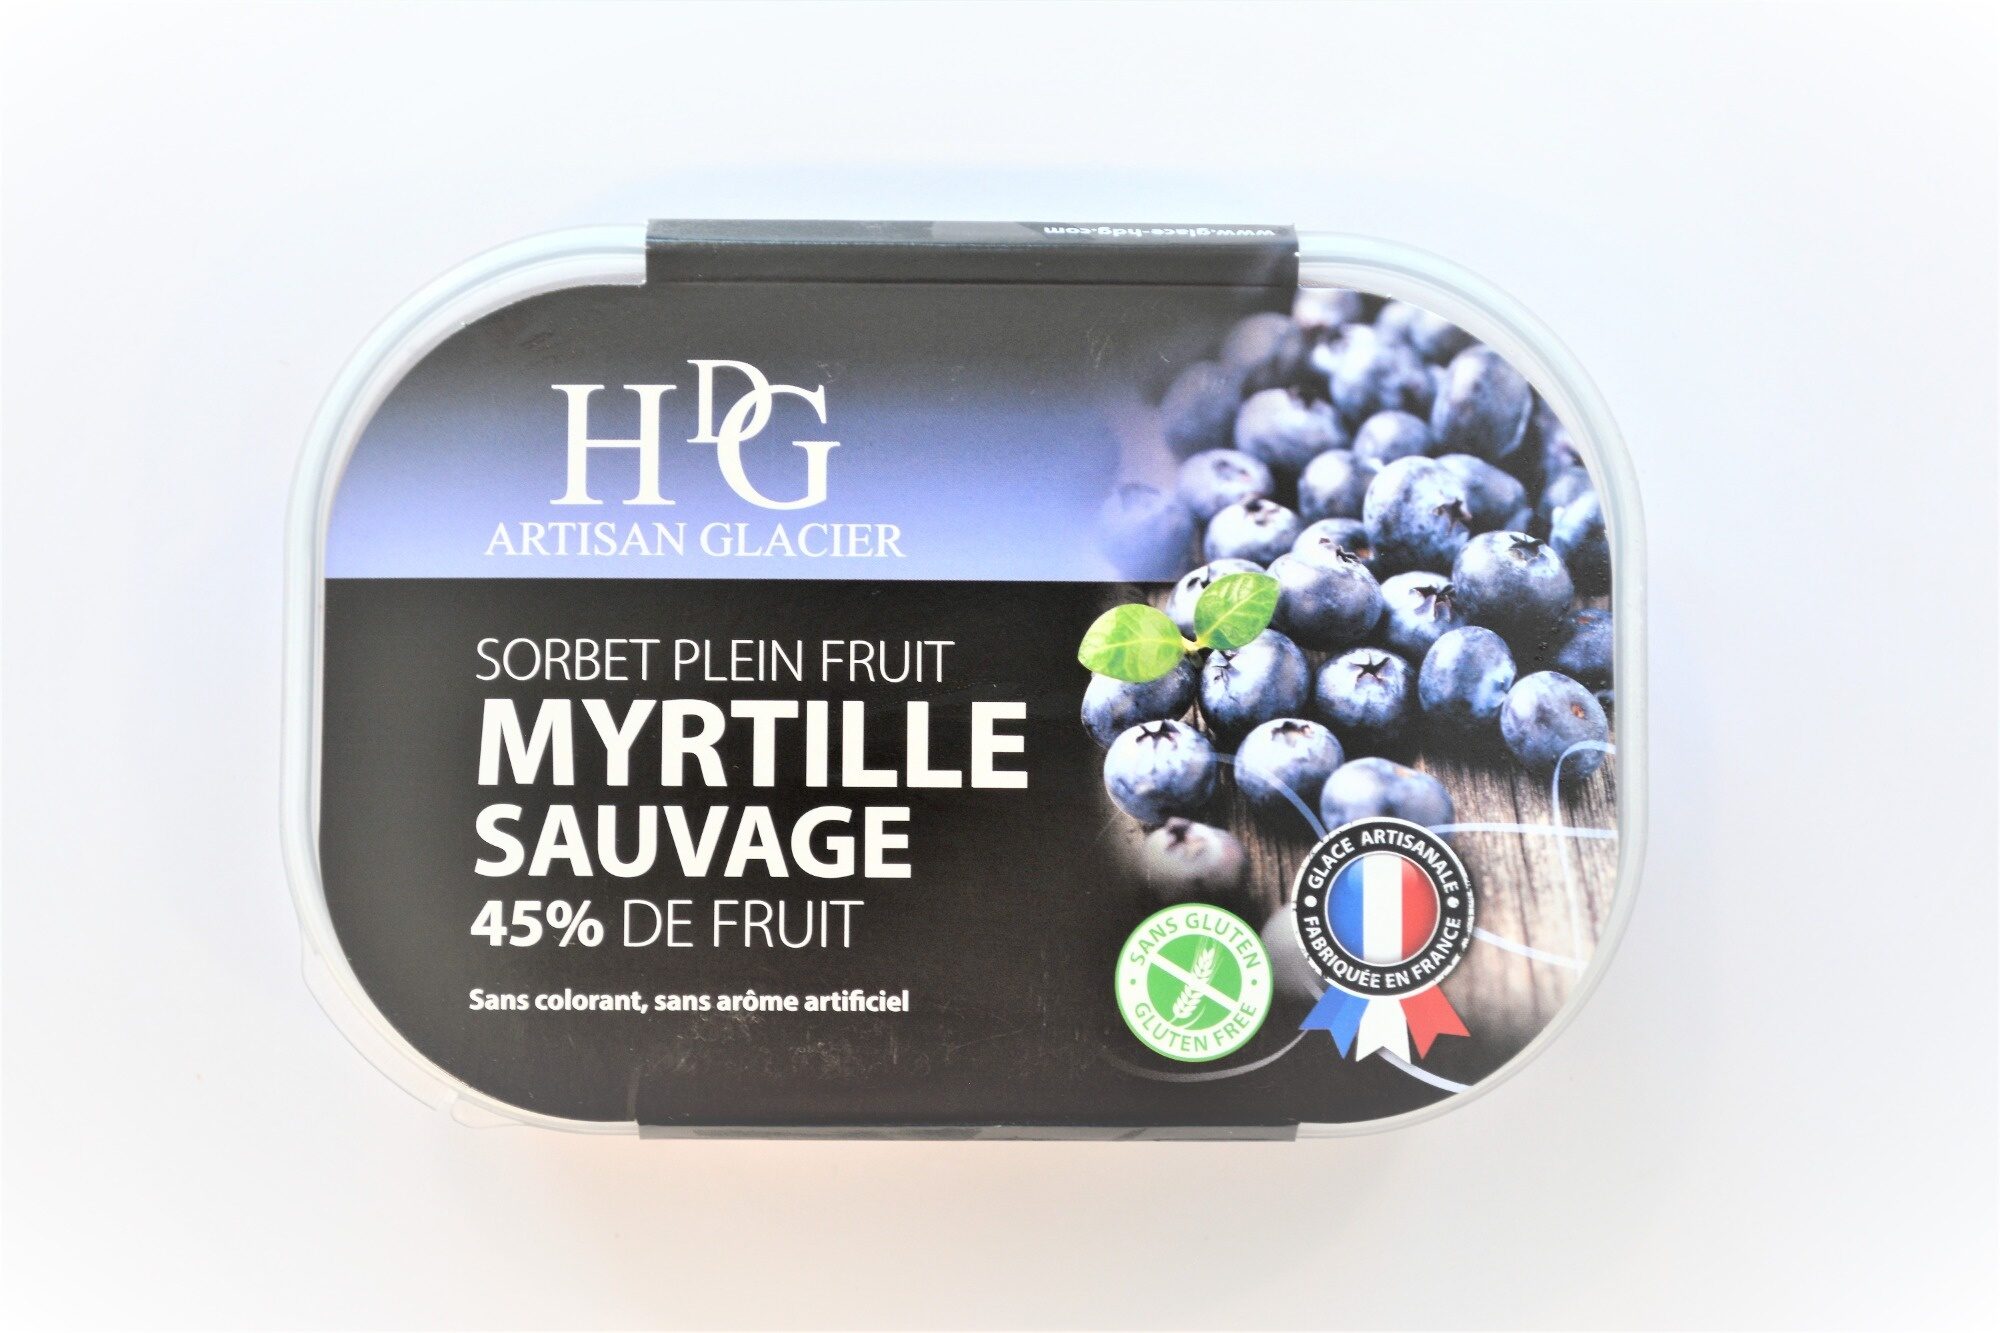 Sorbet plein fruit MYRTILLE SAUVAGE, 58% de fruit - Product - fr